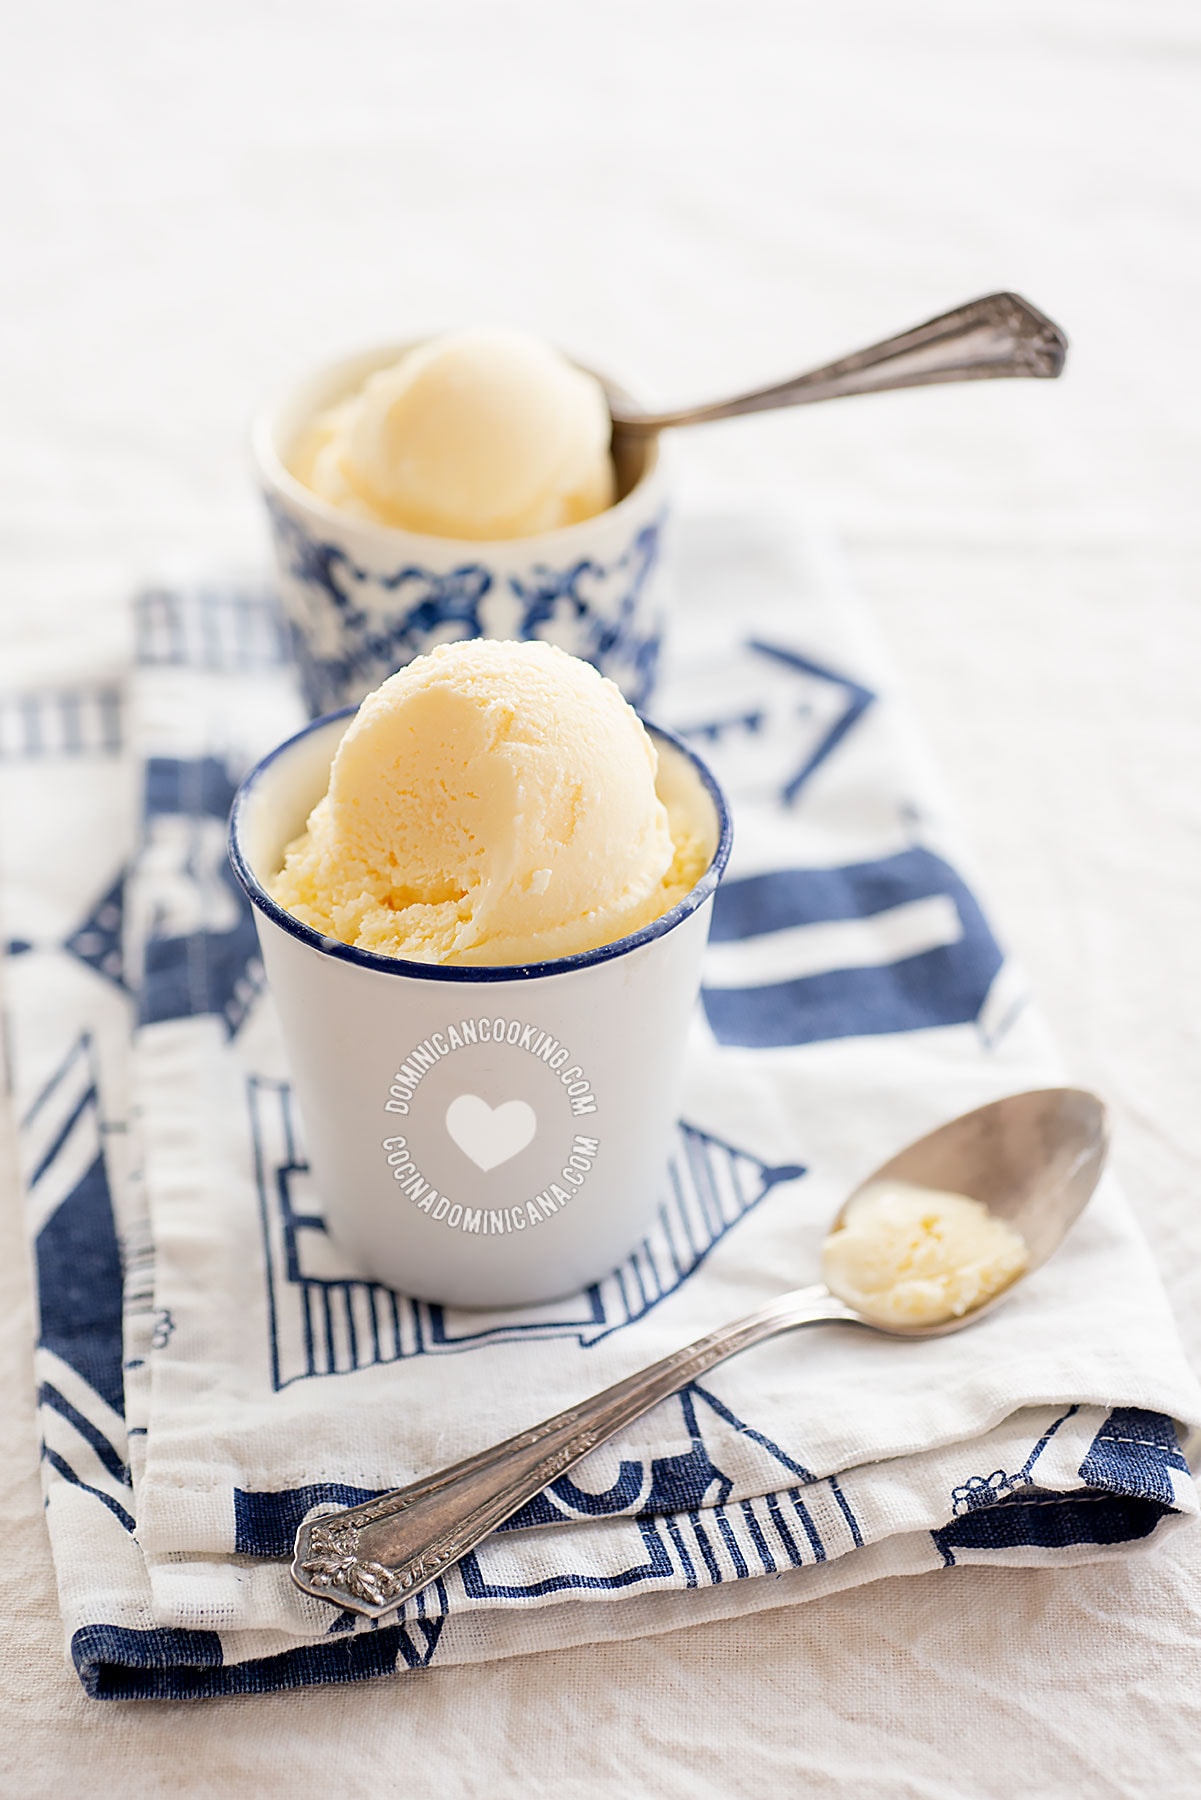 Helado de Morir Soñando (creamy orange ice cream).